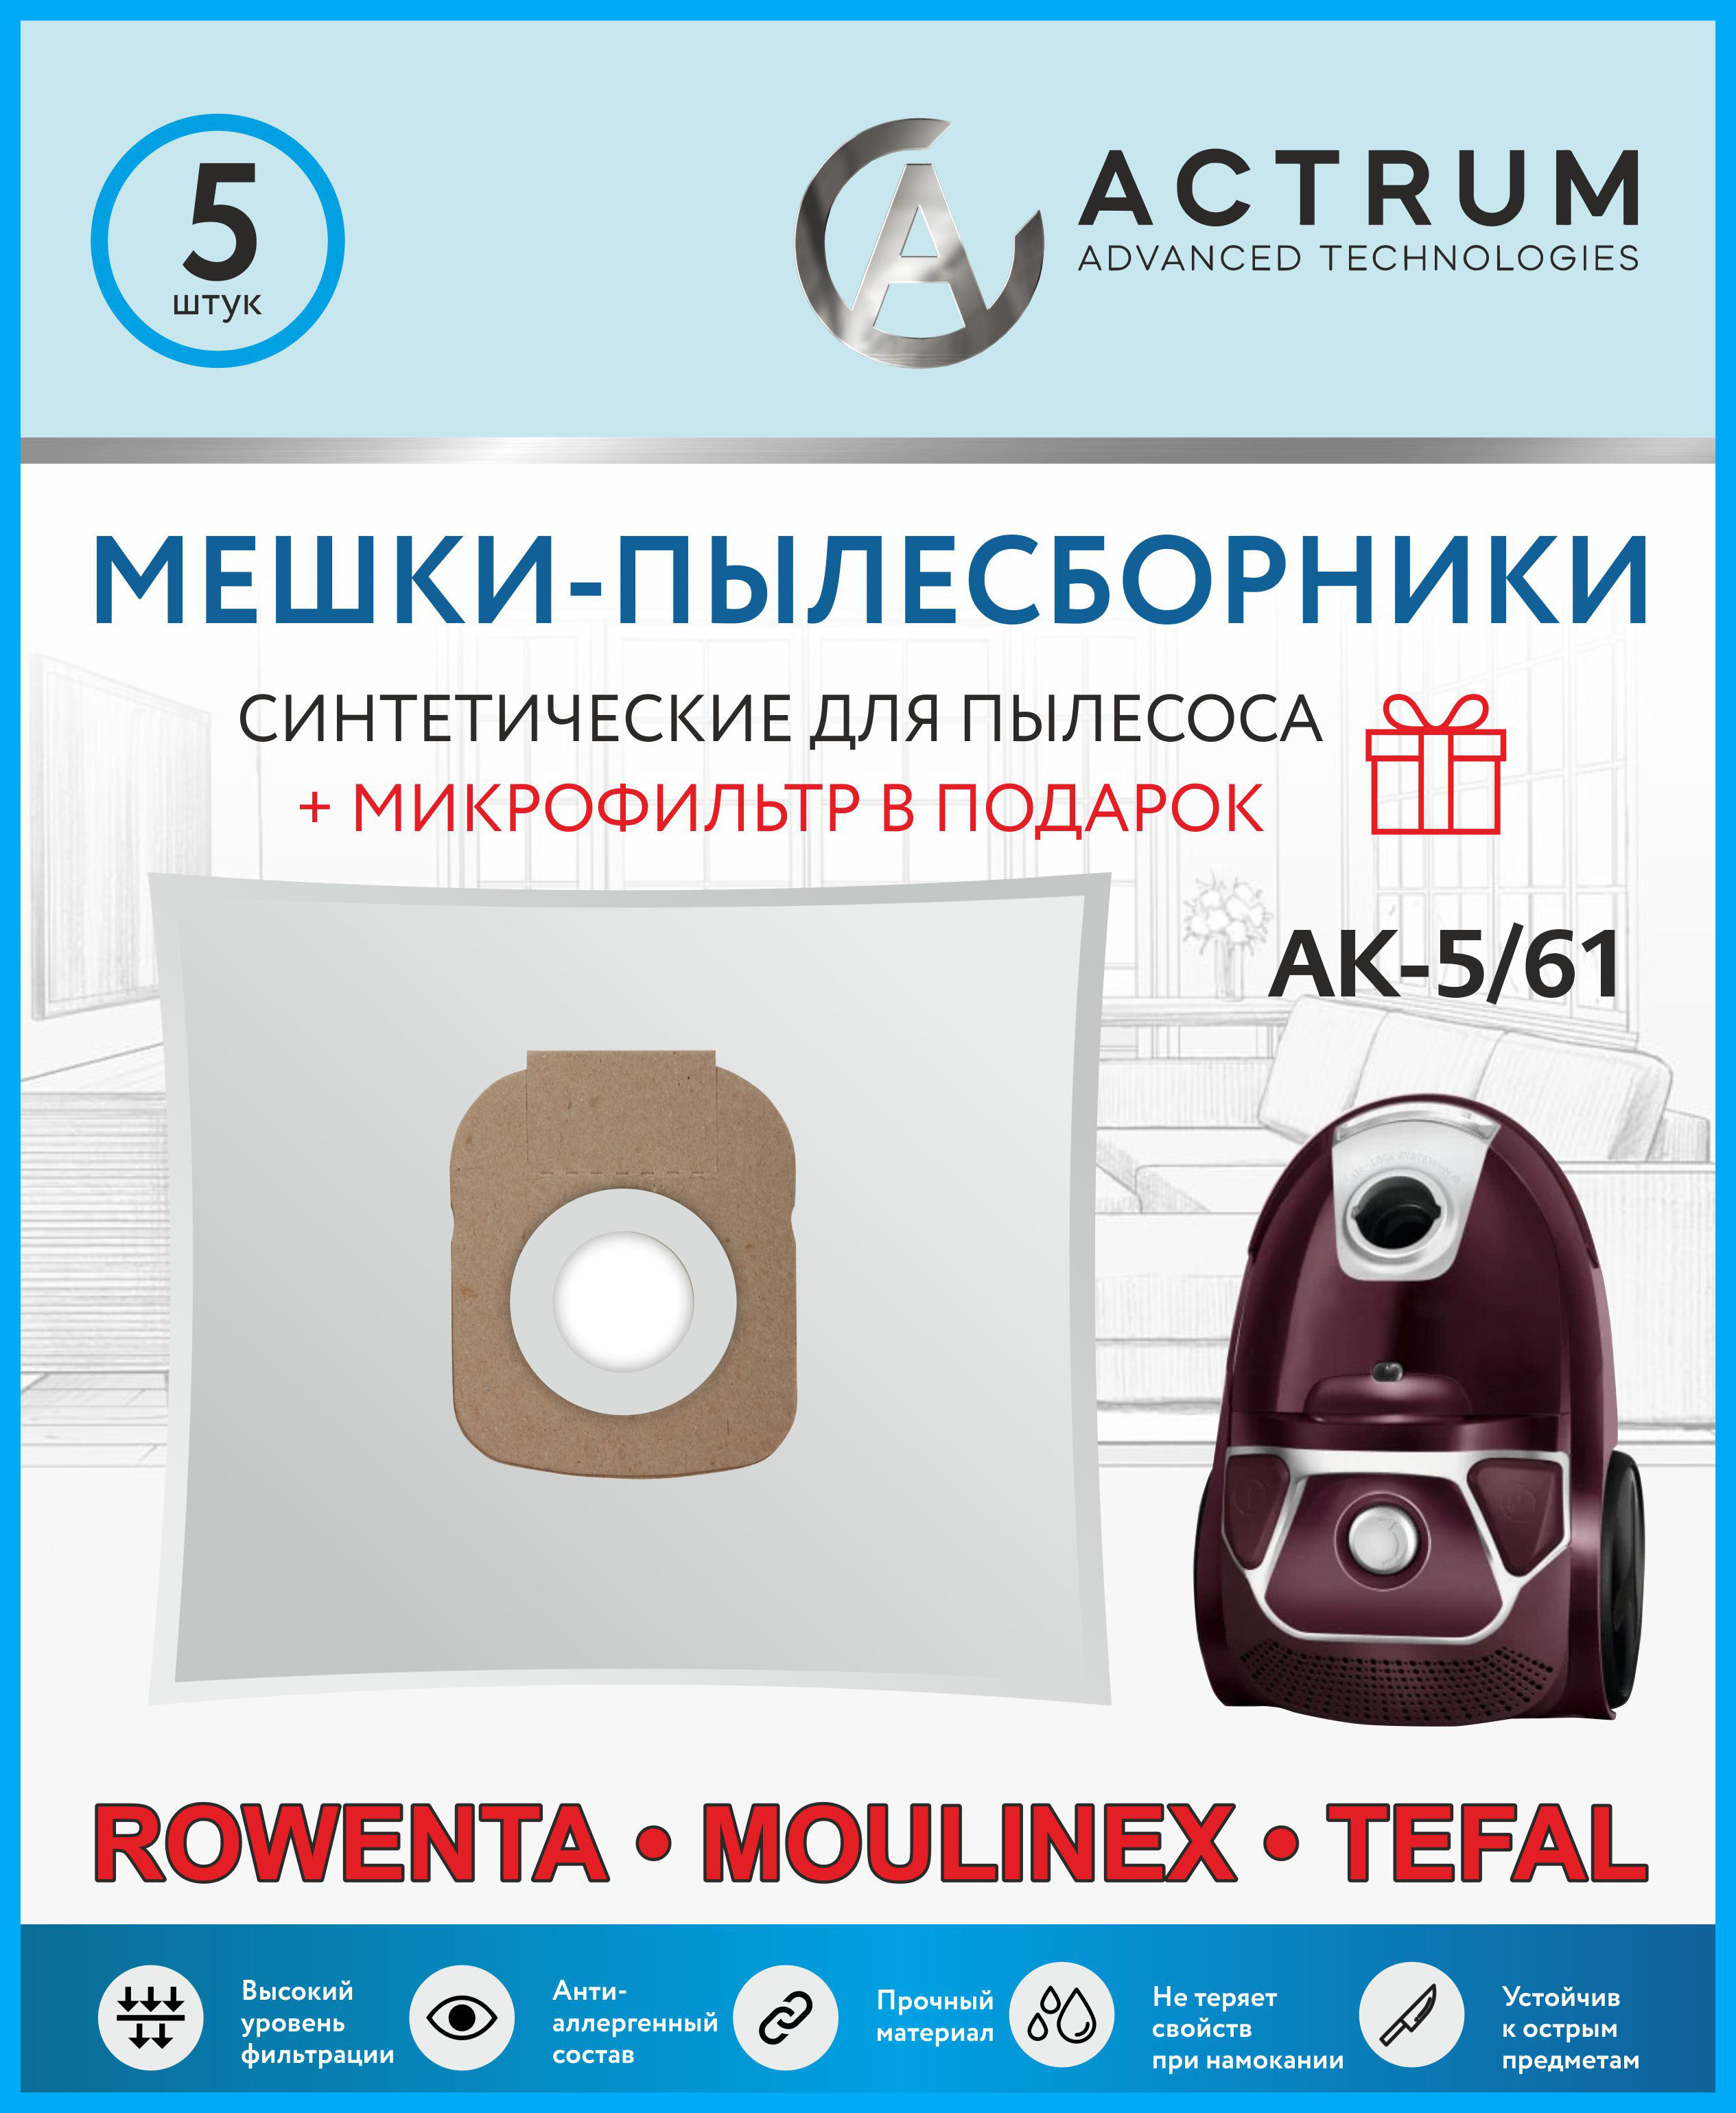 Пылесборник ACTRUM AK-5/61 пылесборник для zelmer actrum ak 5 53 5 шт